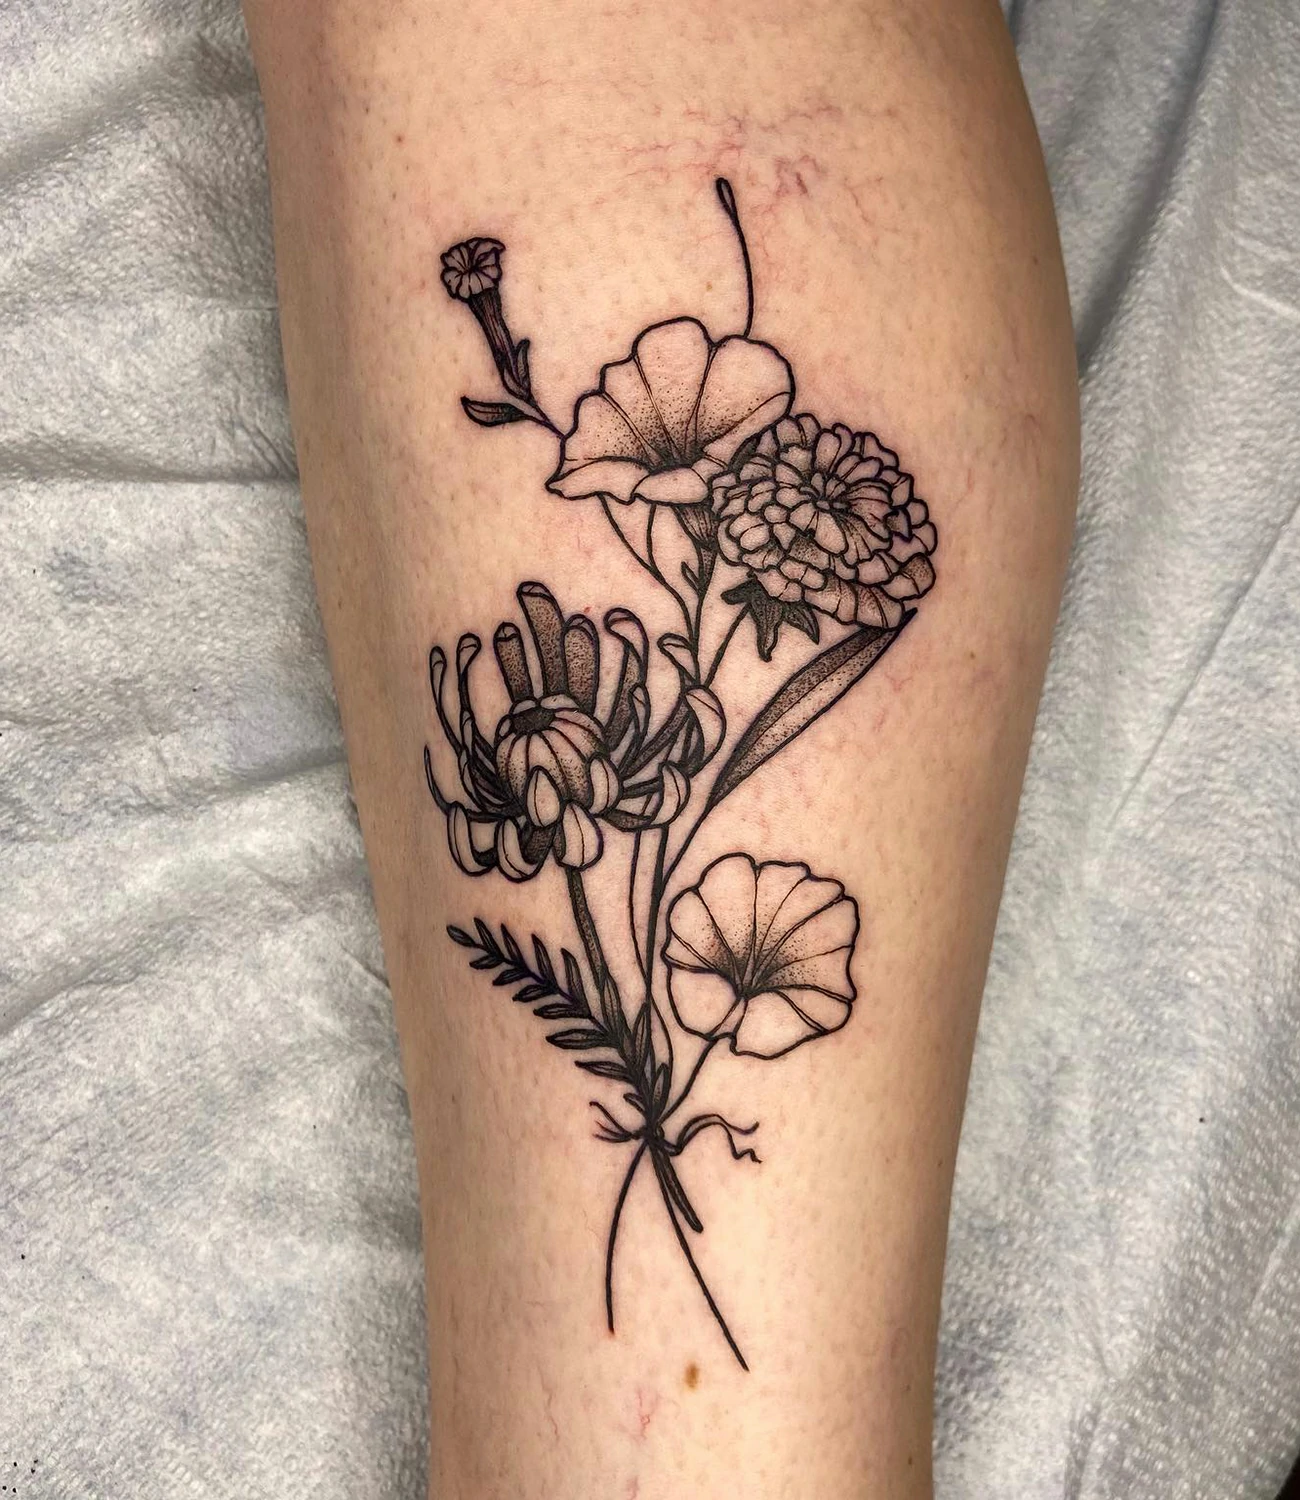 Marigold and Chrysanthemum Tattoo #chrysanthemumtattoo